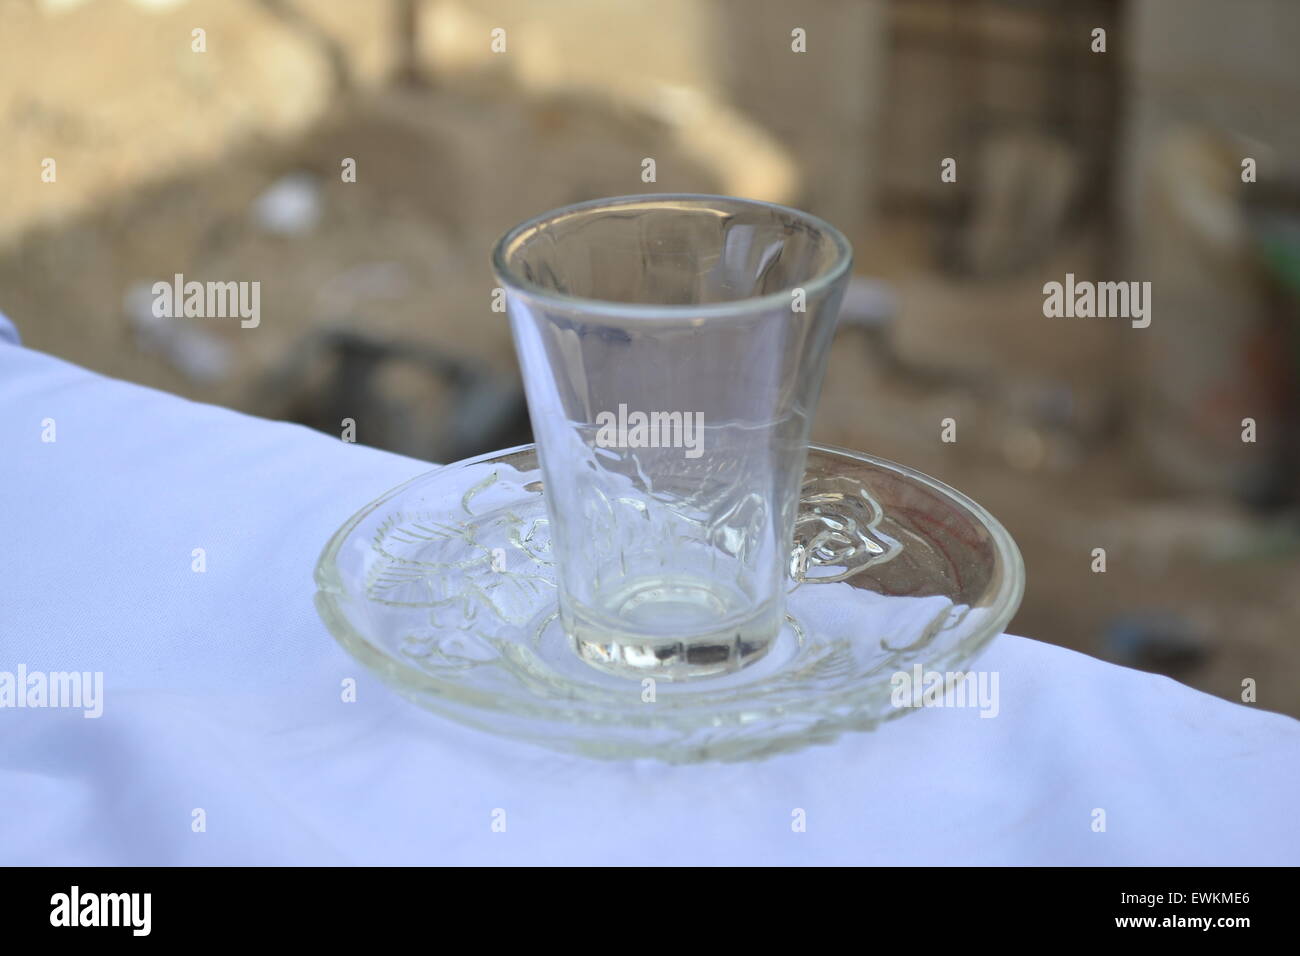 https://c8.alamy.com/comp/EWKME6/a-beverage-small-glass-cup-on-saucer-EWKME6.jpg